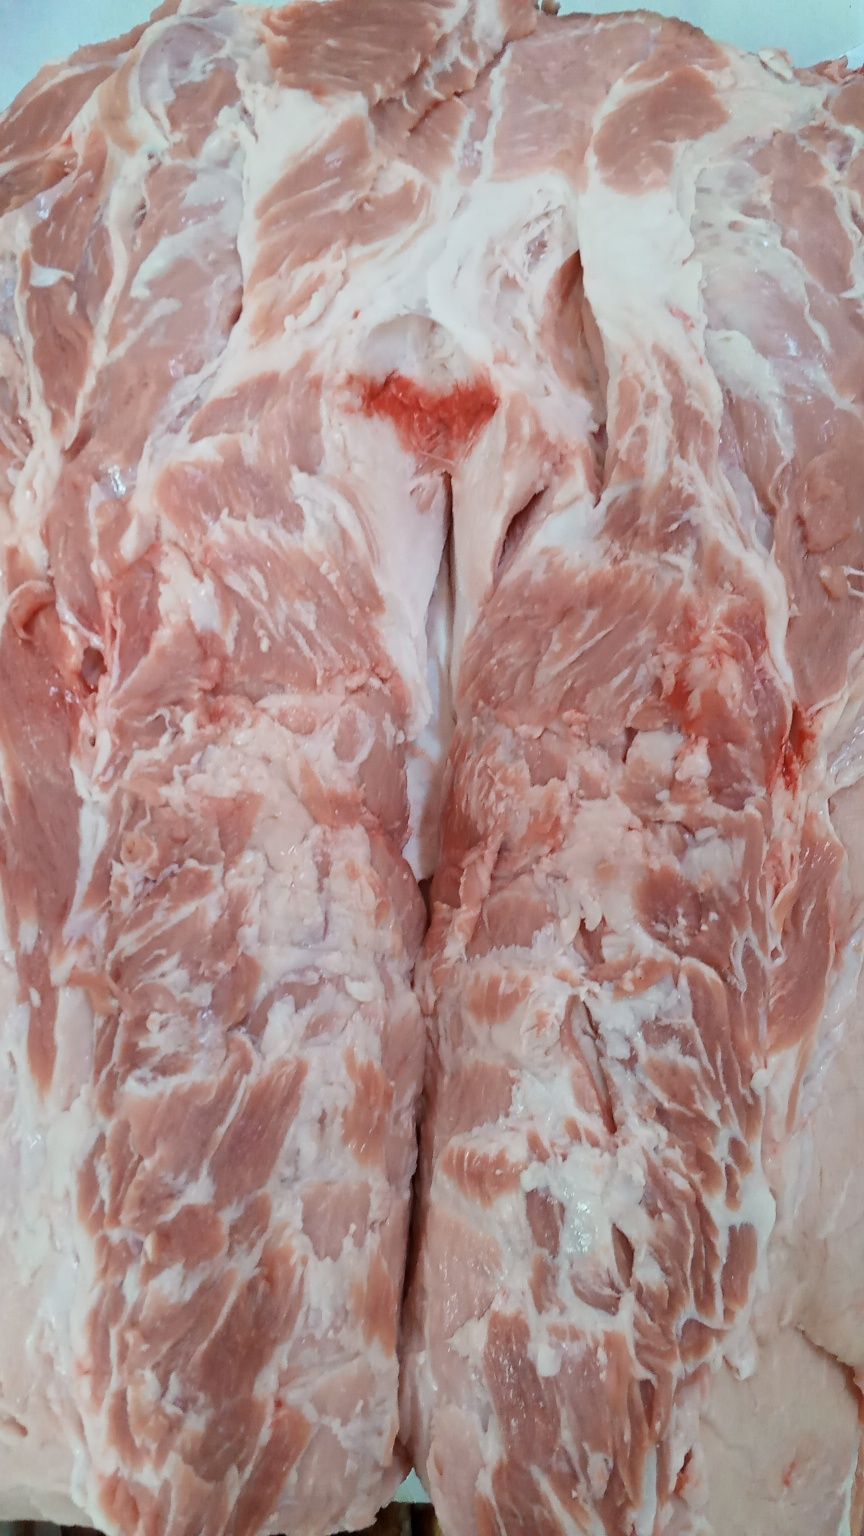 мясо свинины по доступной цене